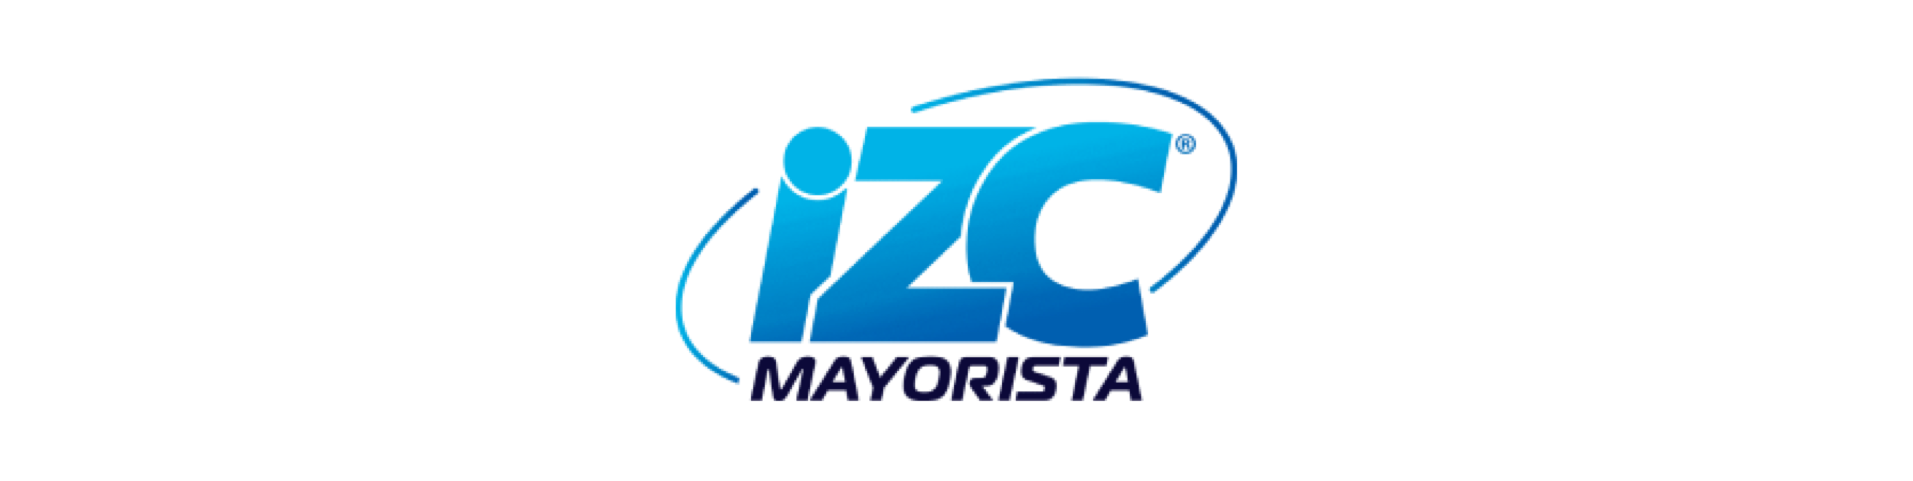 شعار izc